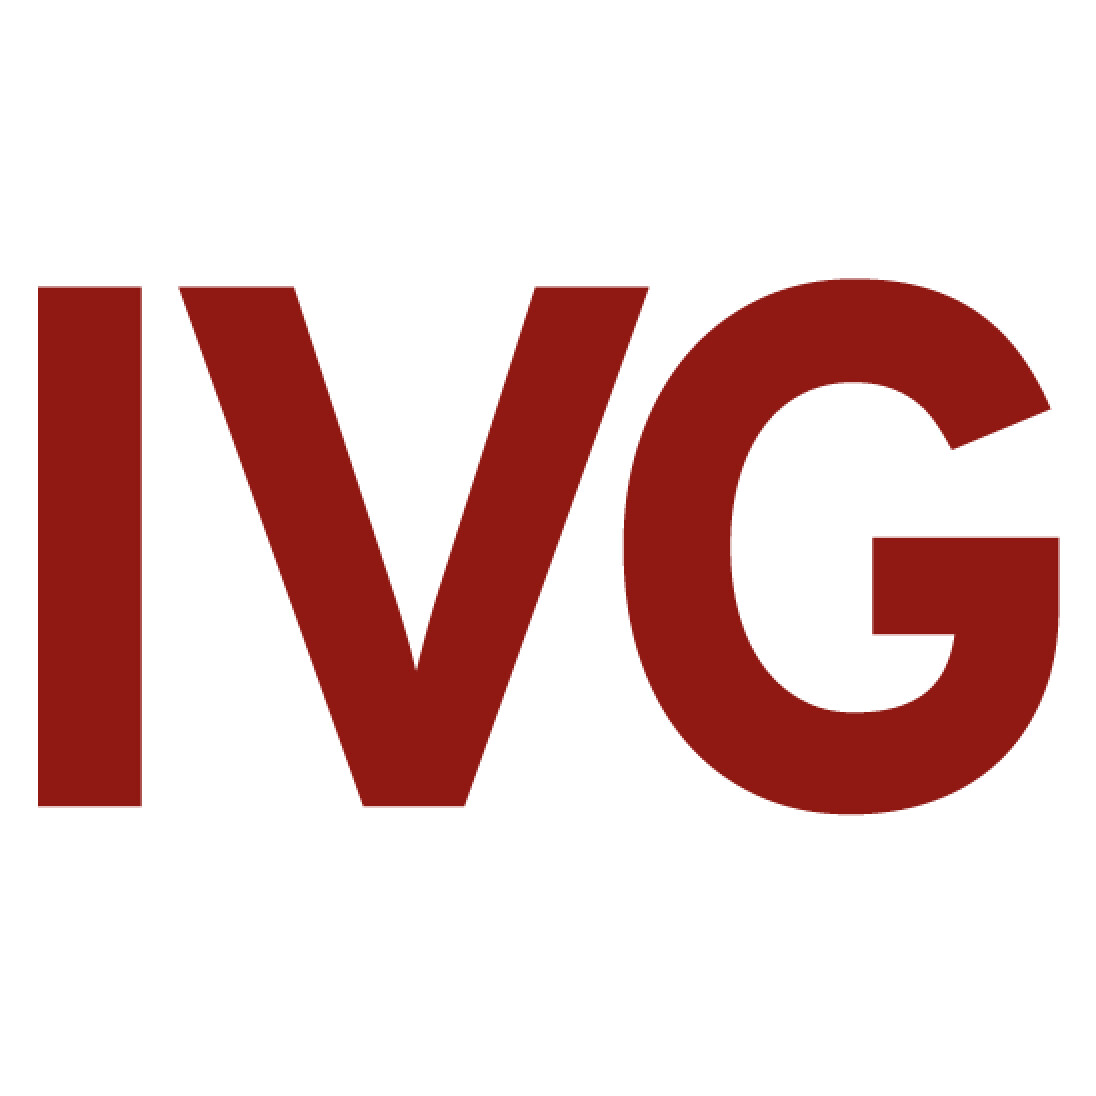 www.ivg.it